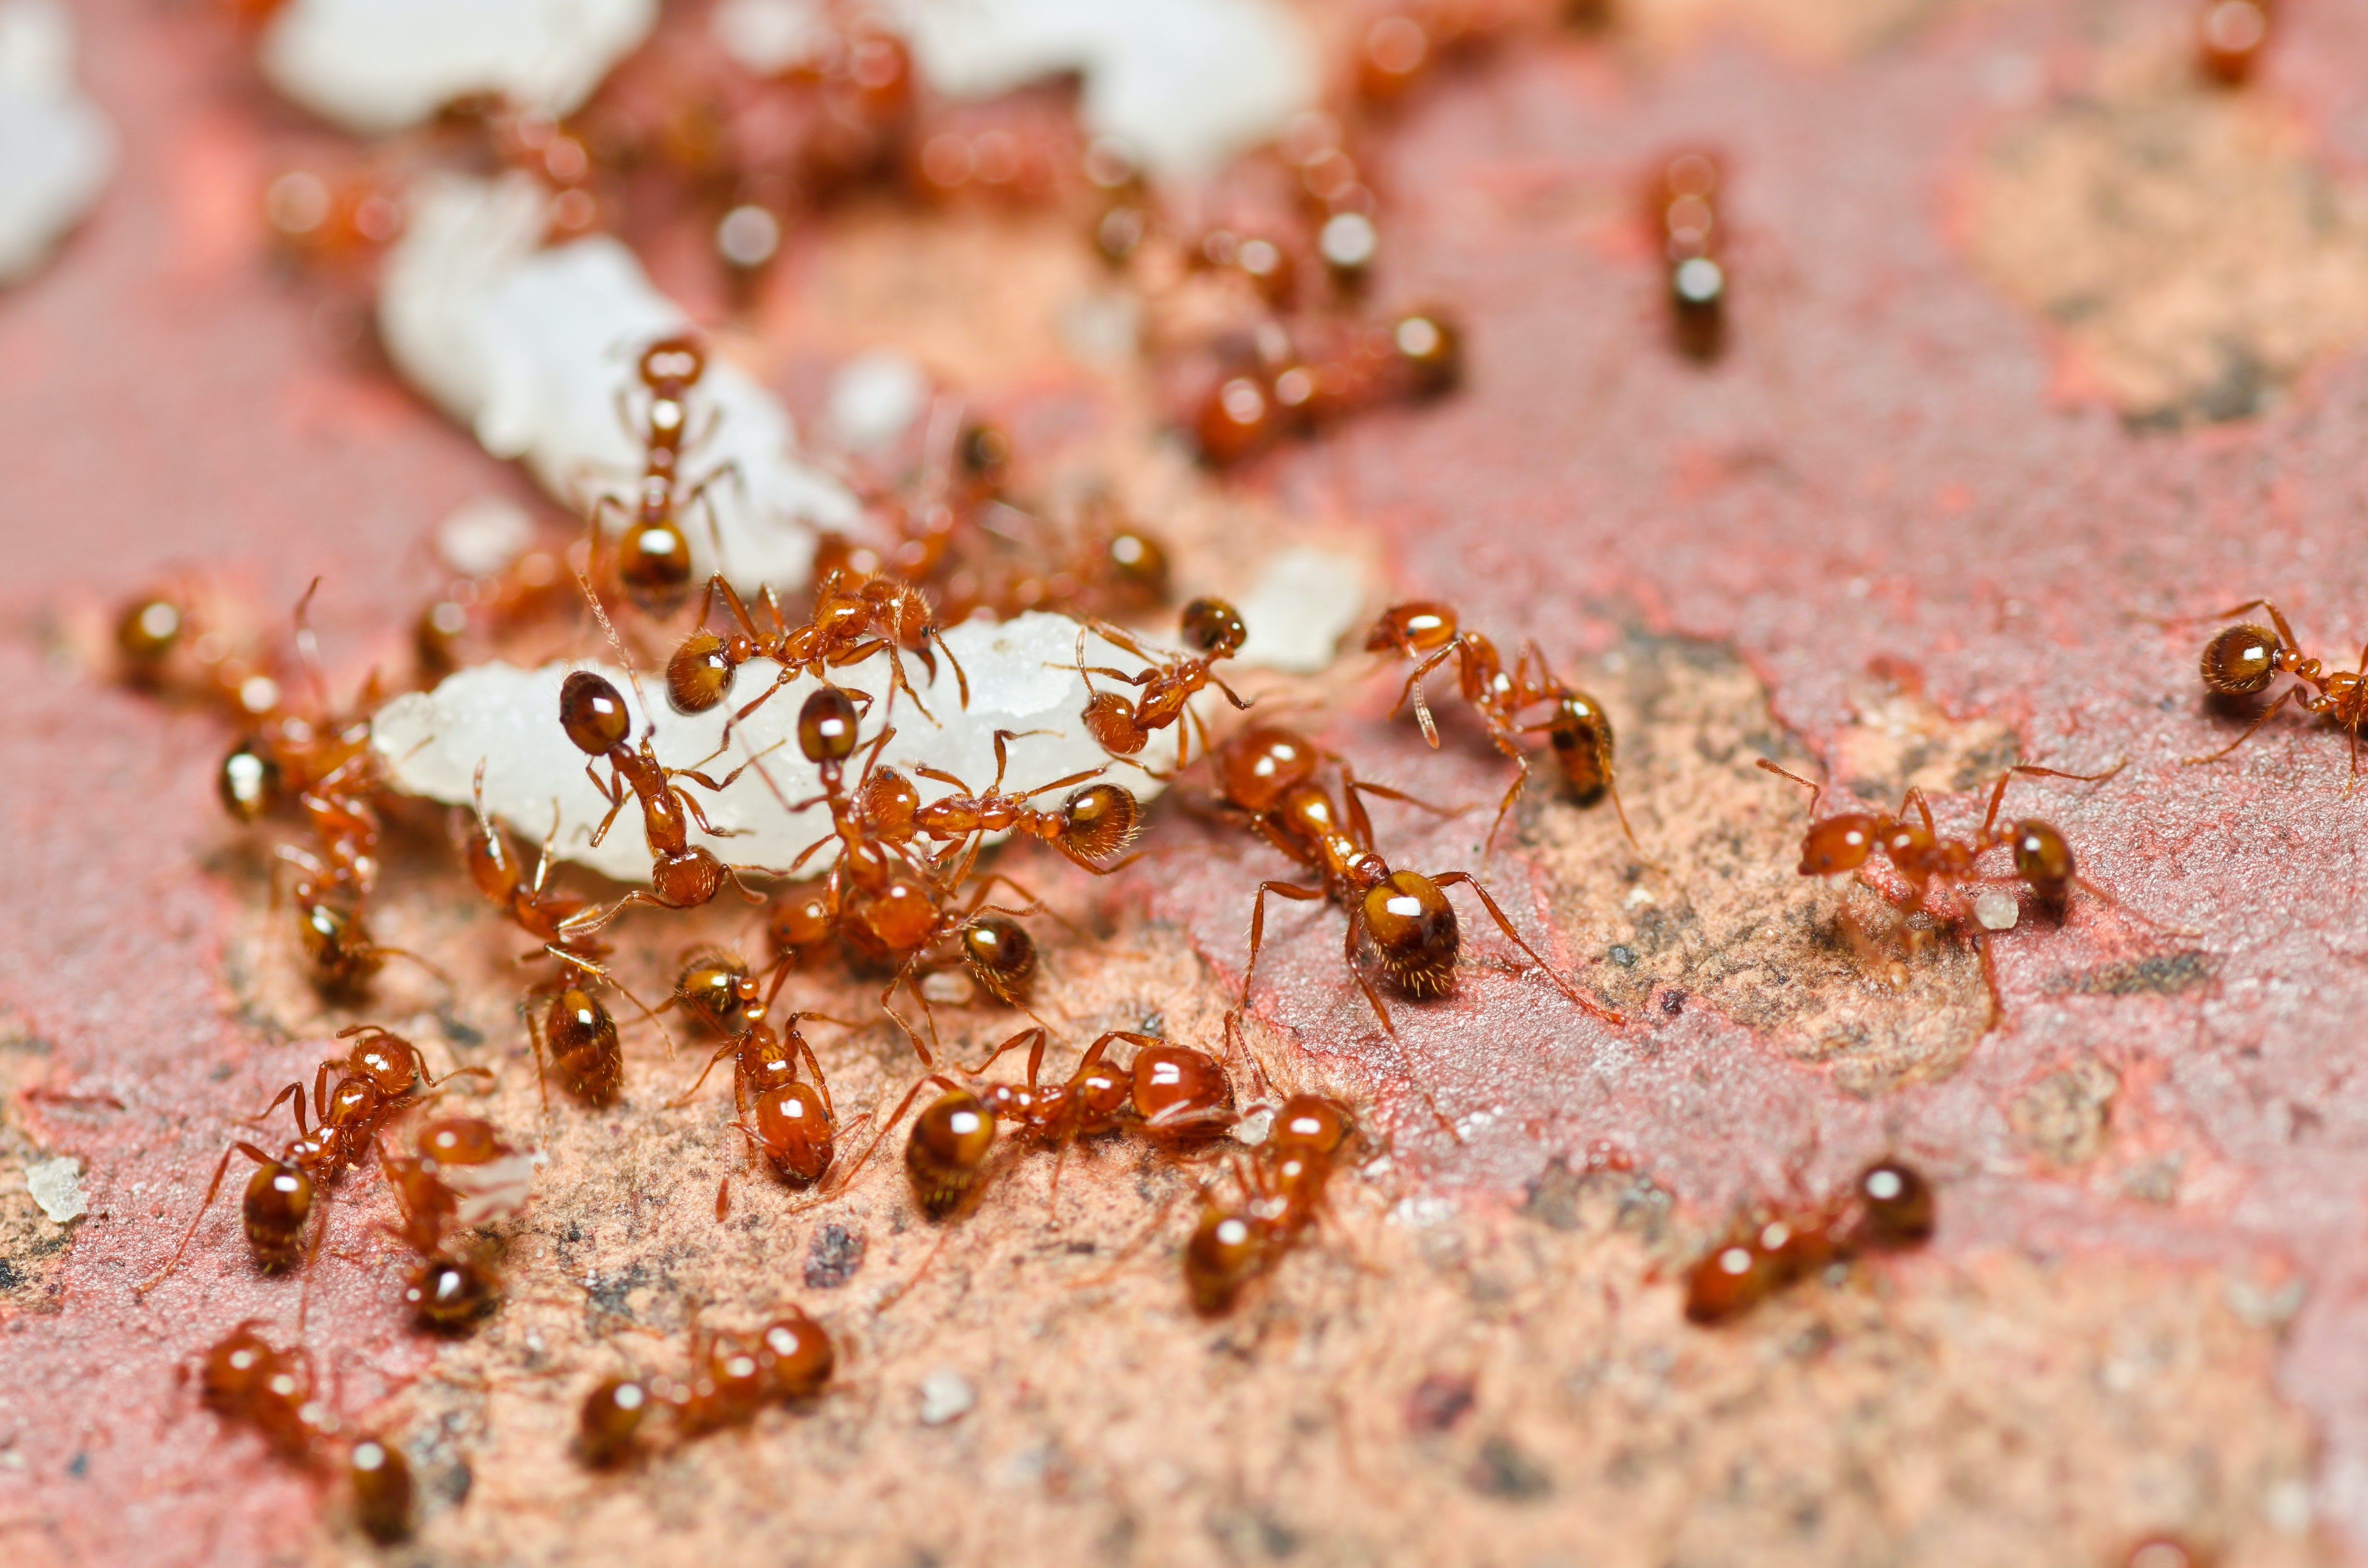 Рыжие муравьи. Фараоновые муравьи Муравейник. Личинки фараоновых муравьев. Рыжие Фараоновы муравьи. Красные муравьи термиты.